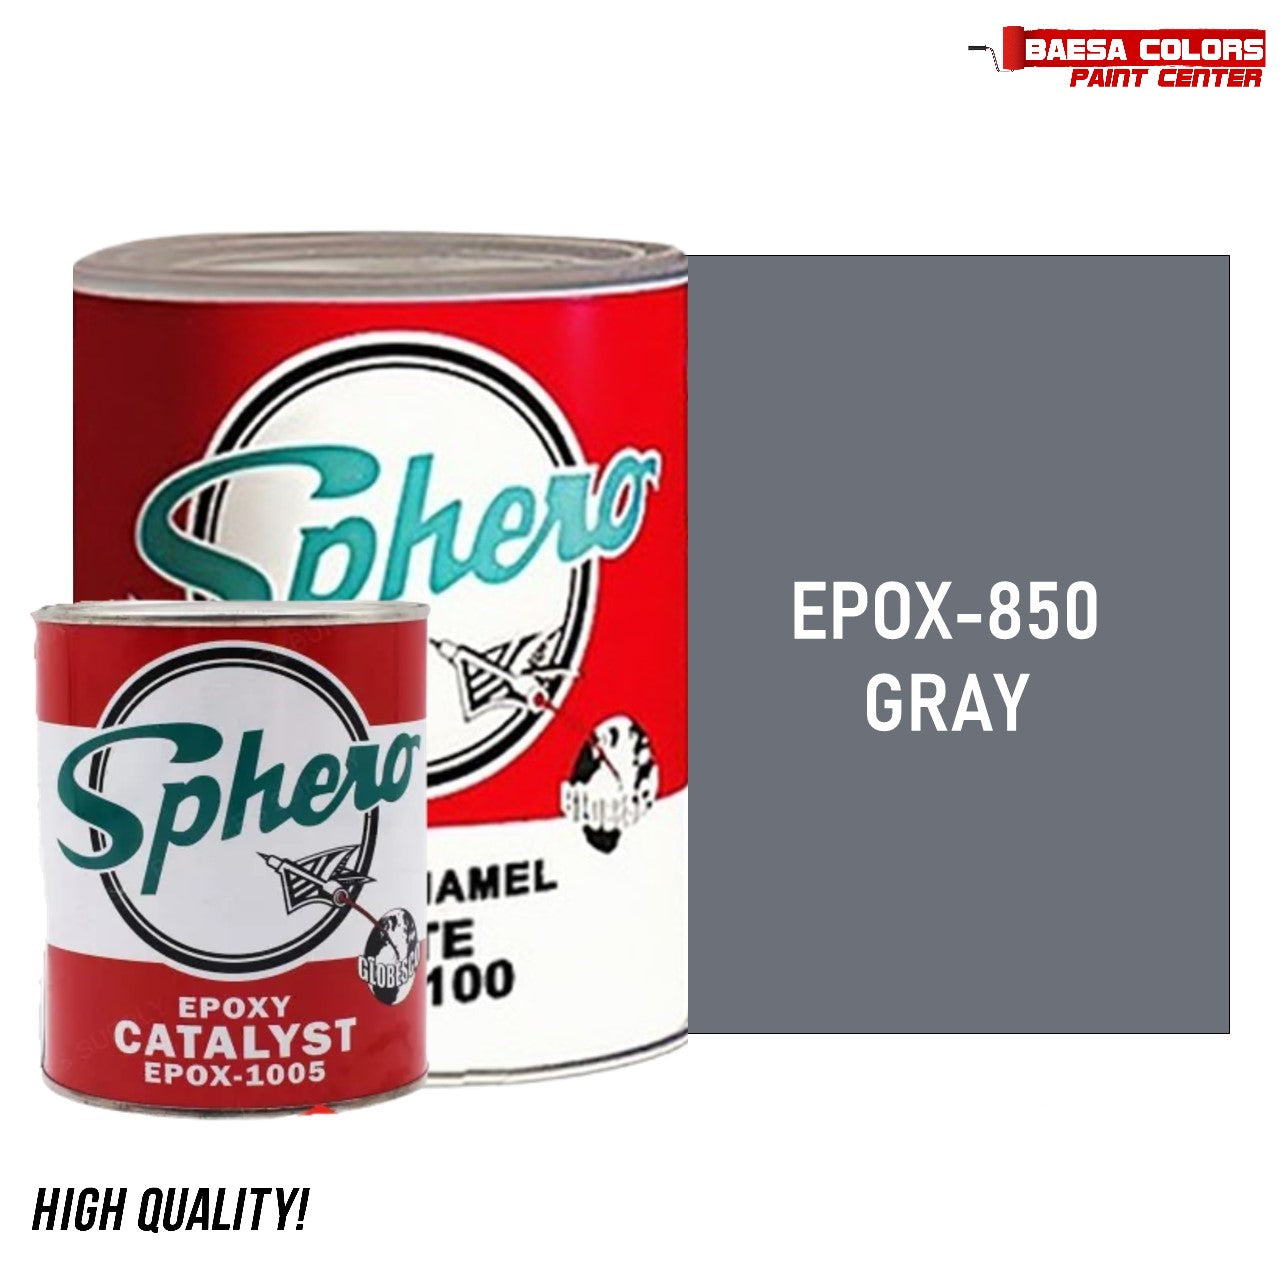 SPHERO Epoxy Enamel